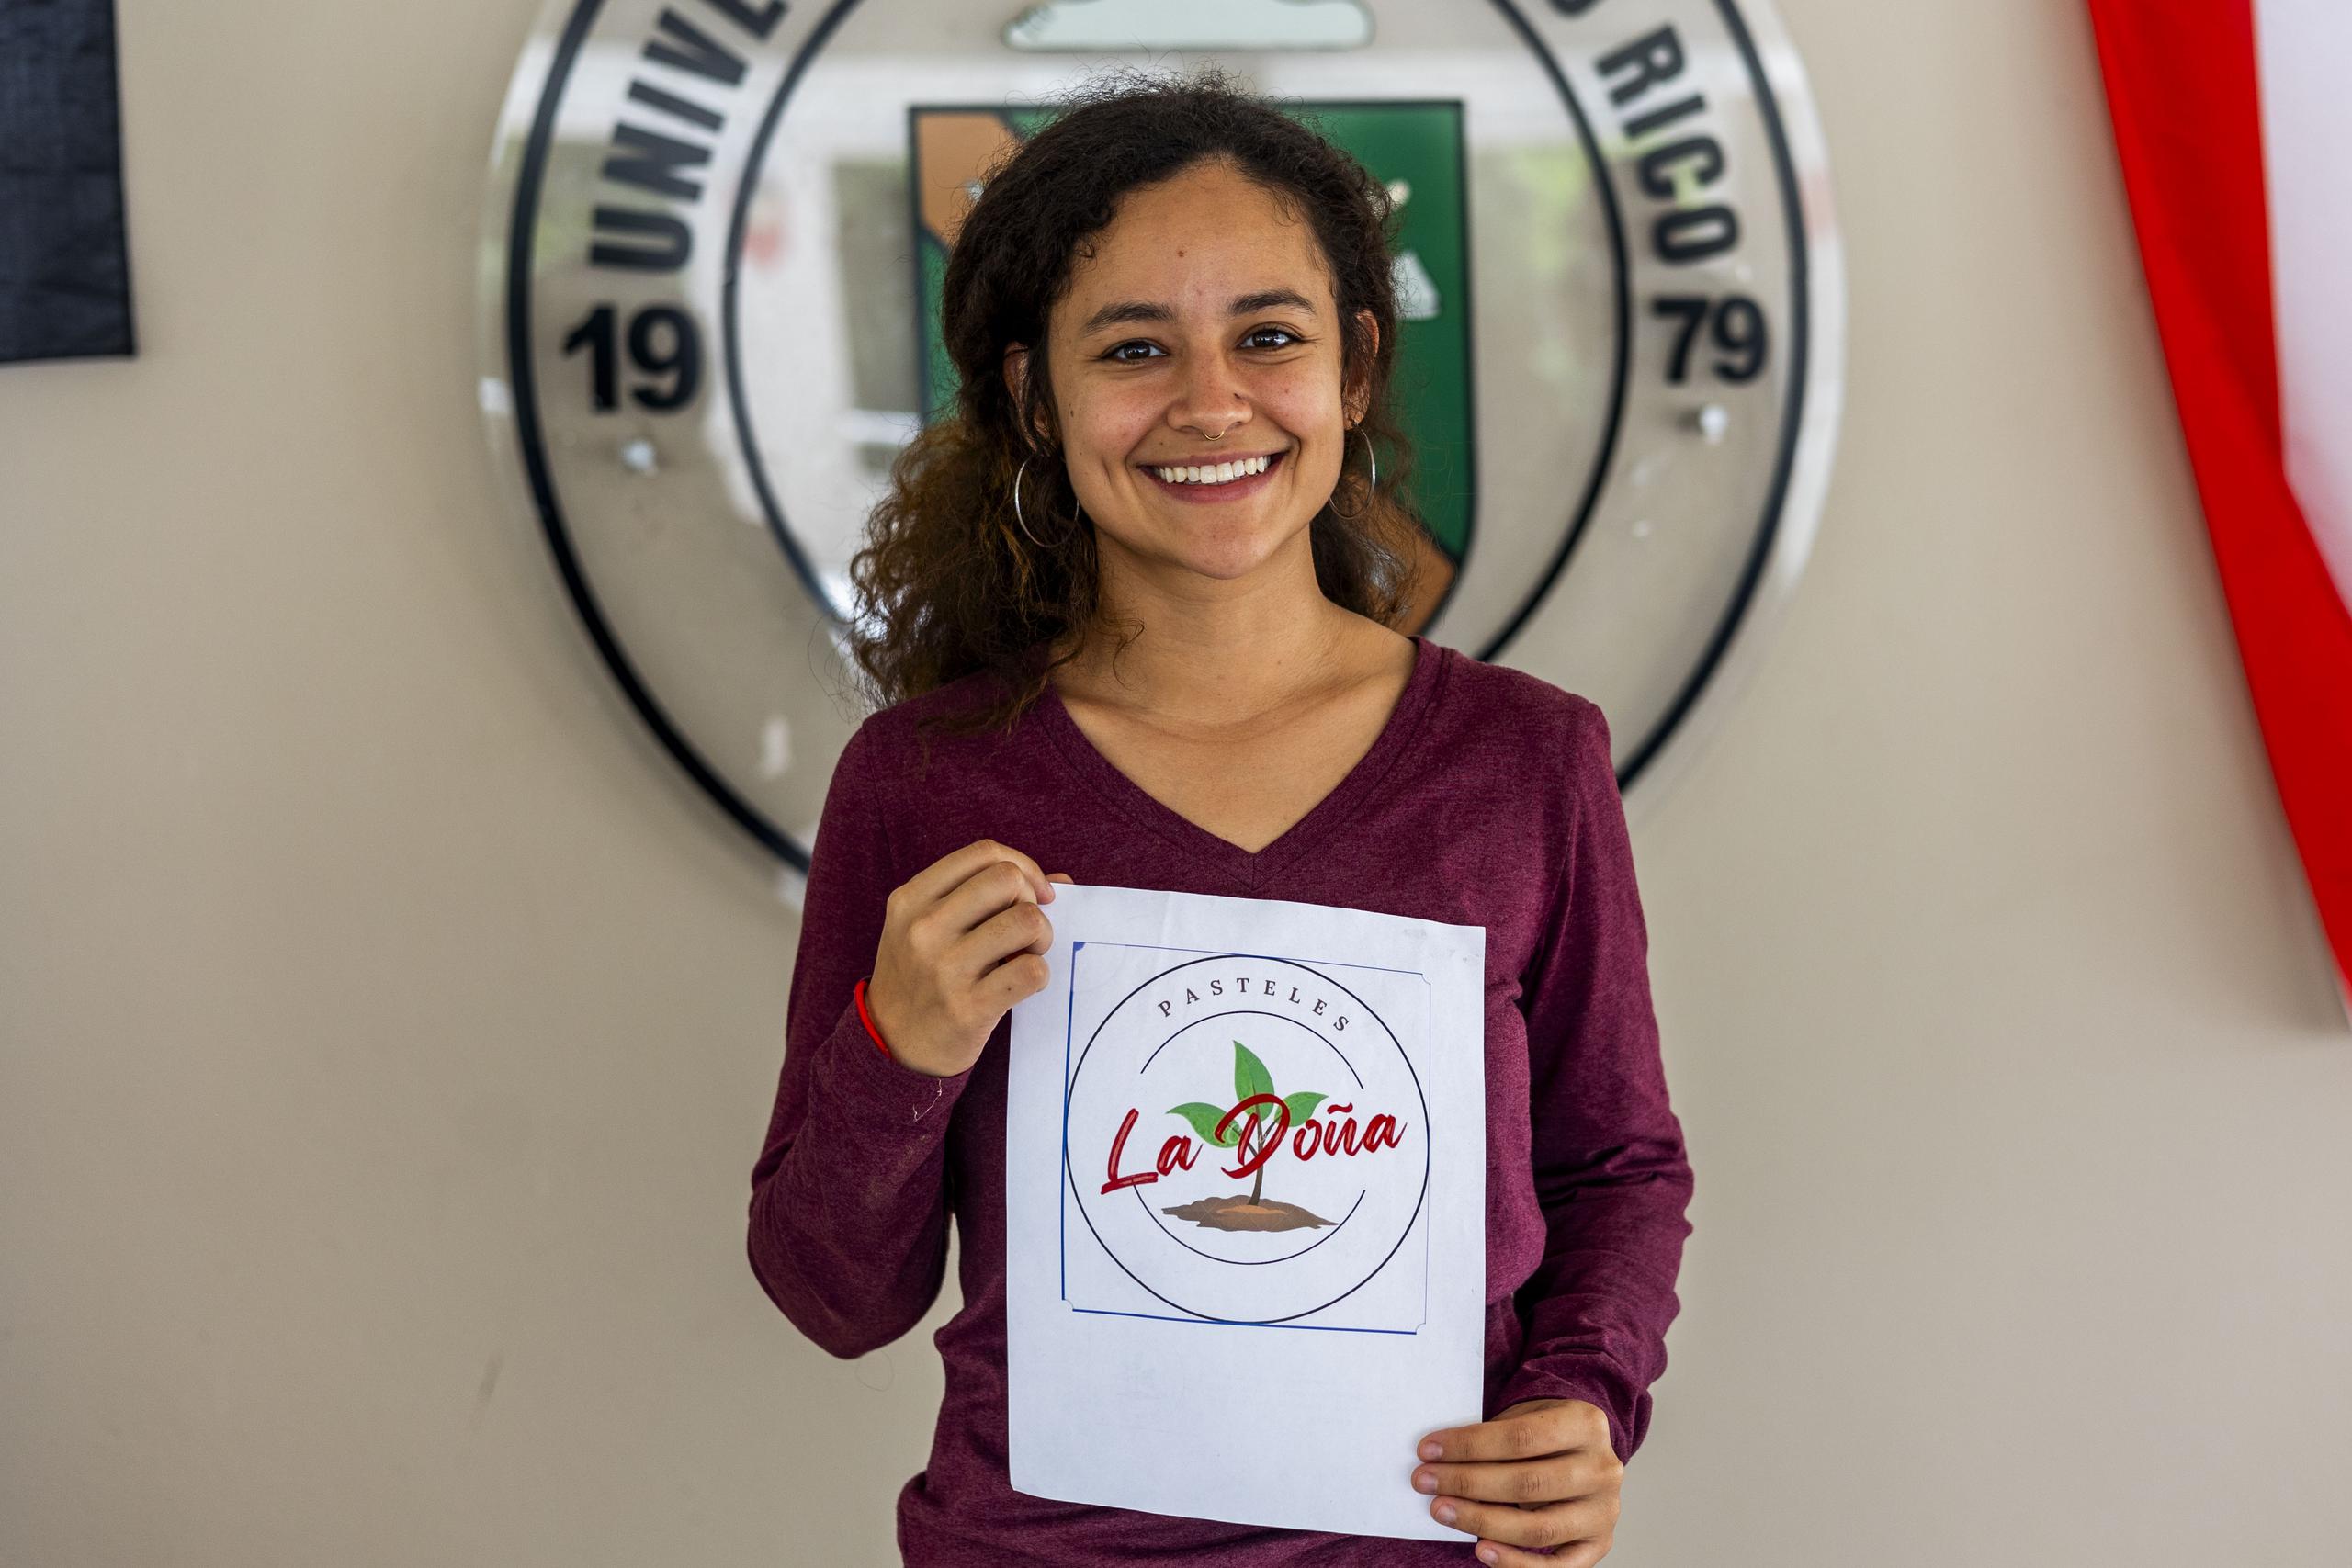 Krystal Martinez, de Guaynabo, cursa un grado asociado en Horticultura y su proyecto agroempresarial son los Pasteles La Doña.